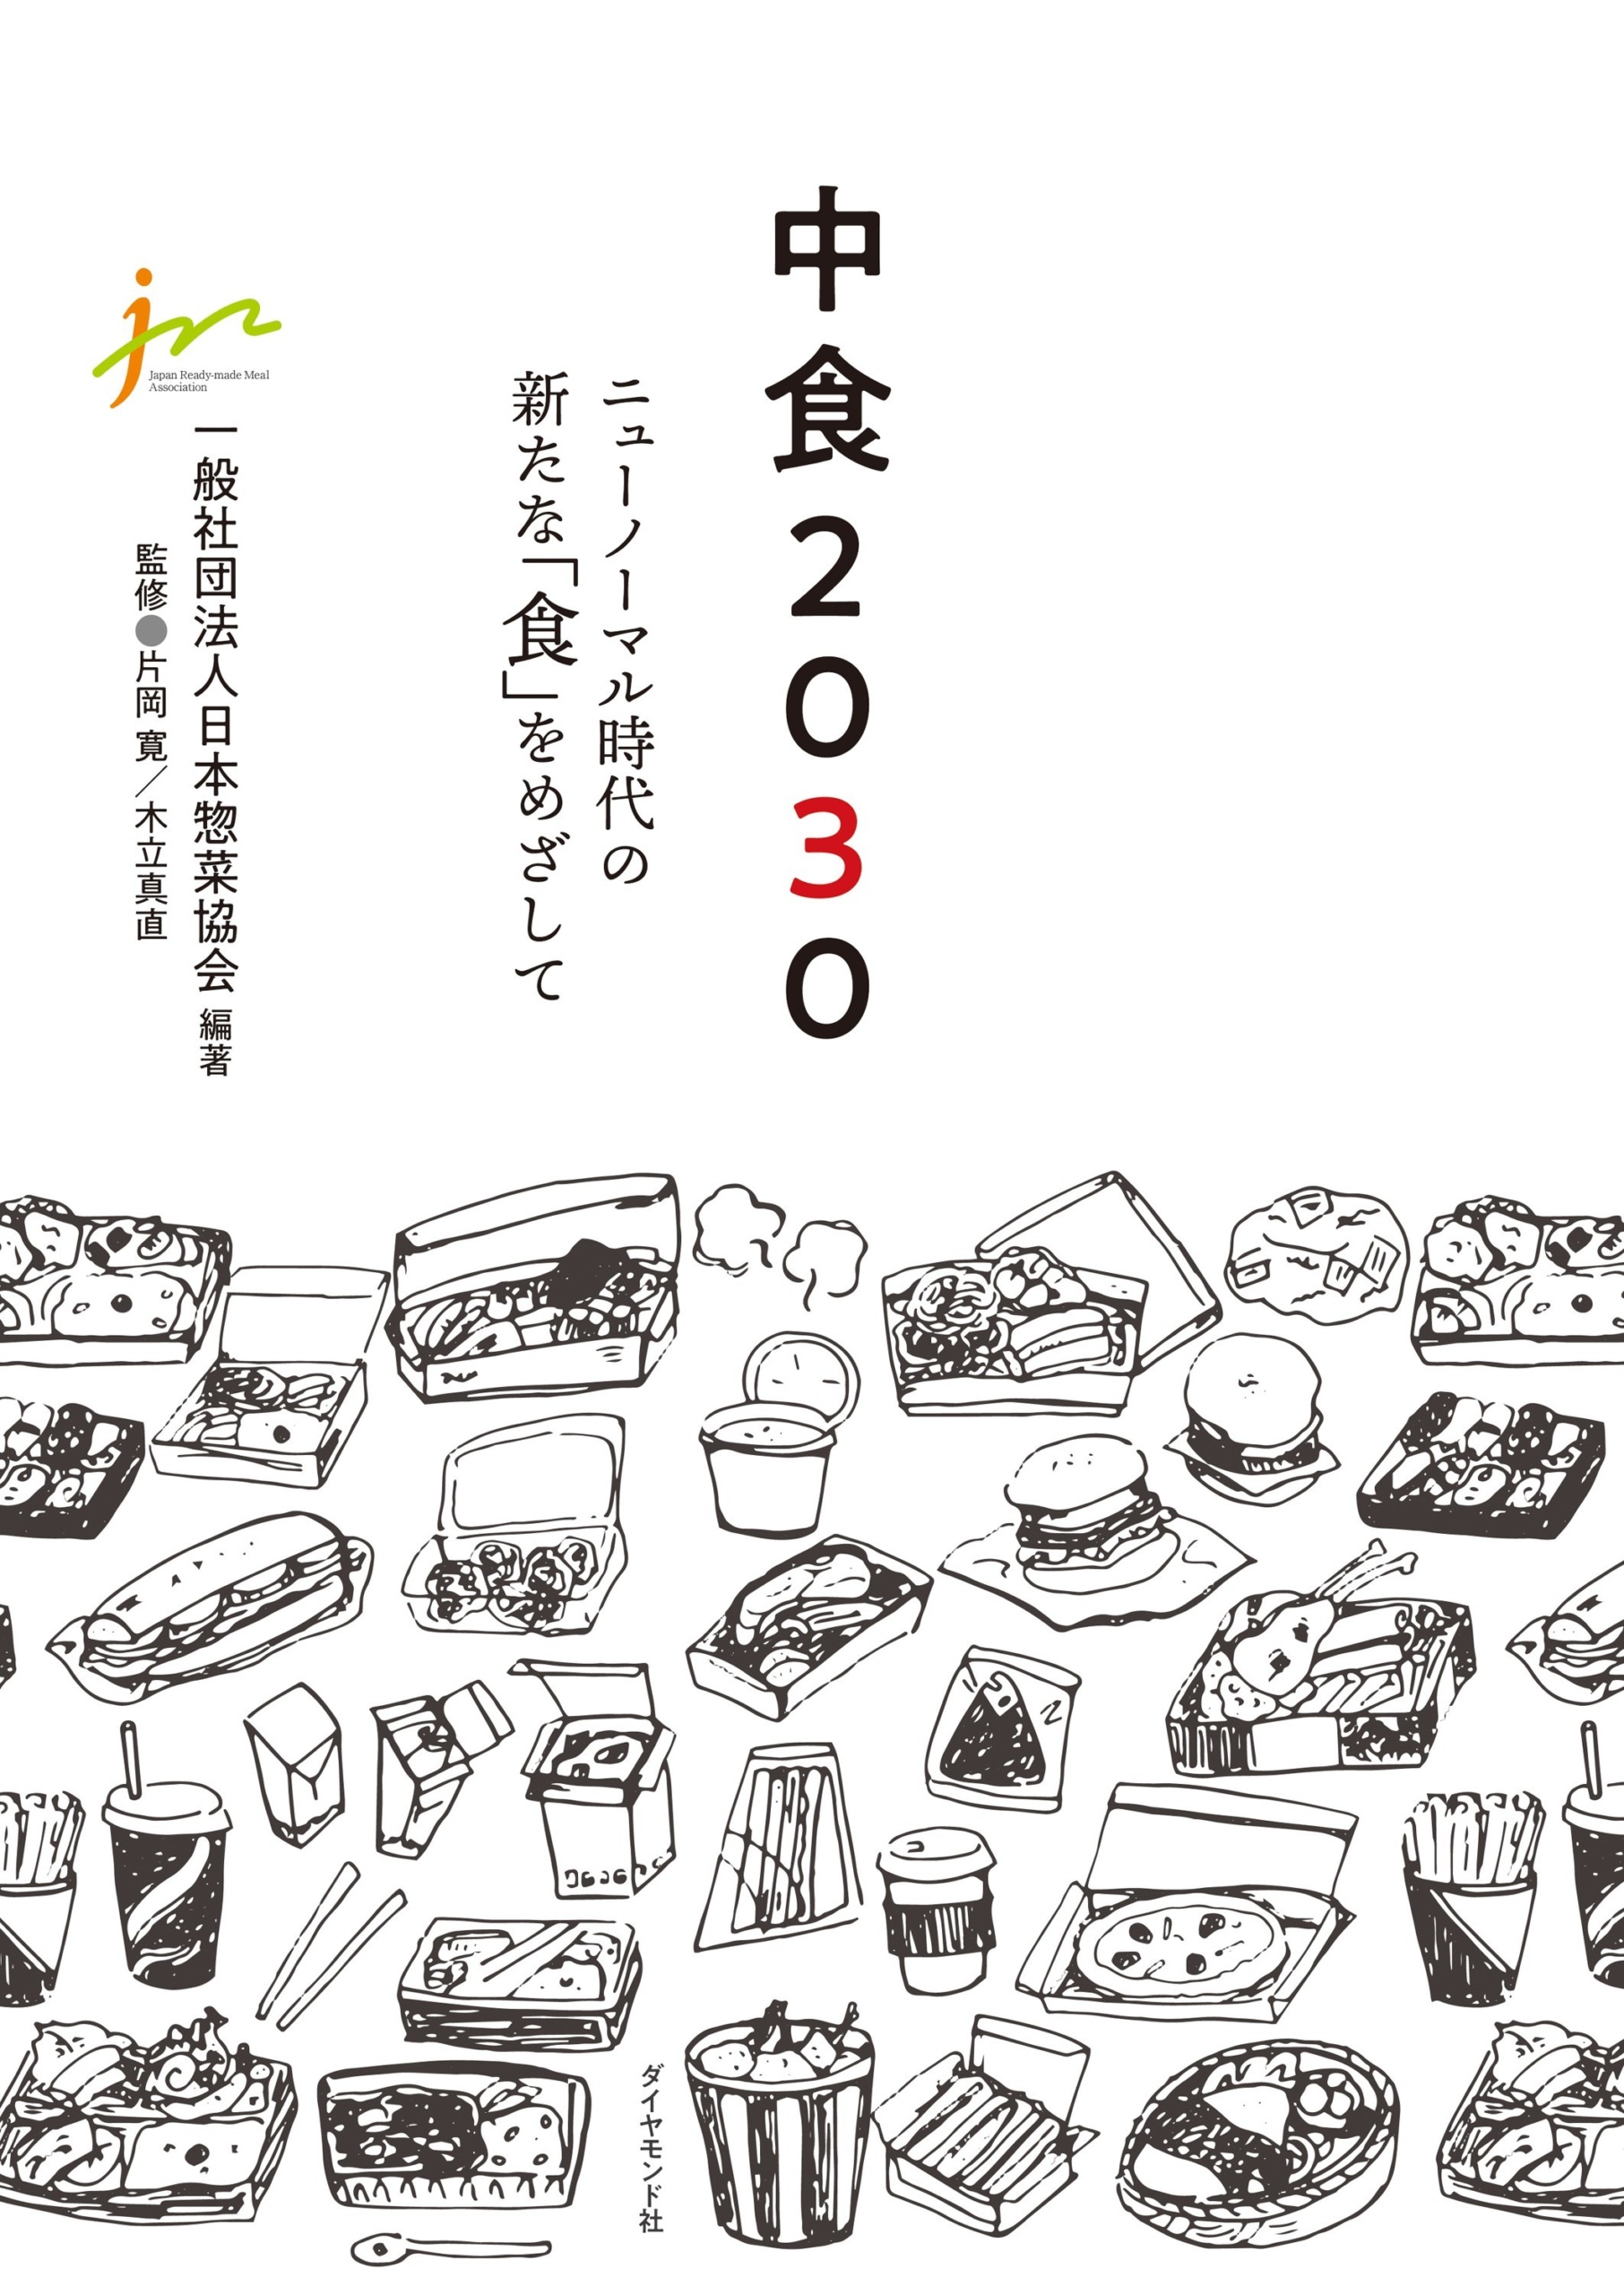 【森下仁丹】明日の食を創造する技術者の祭典 「ifia JAPAN (国際食品素材/添加物展・会議)」に出展